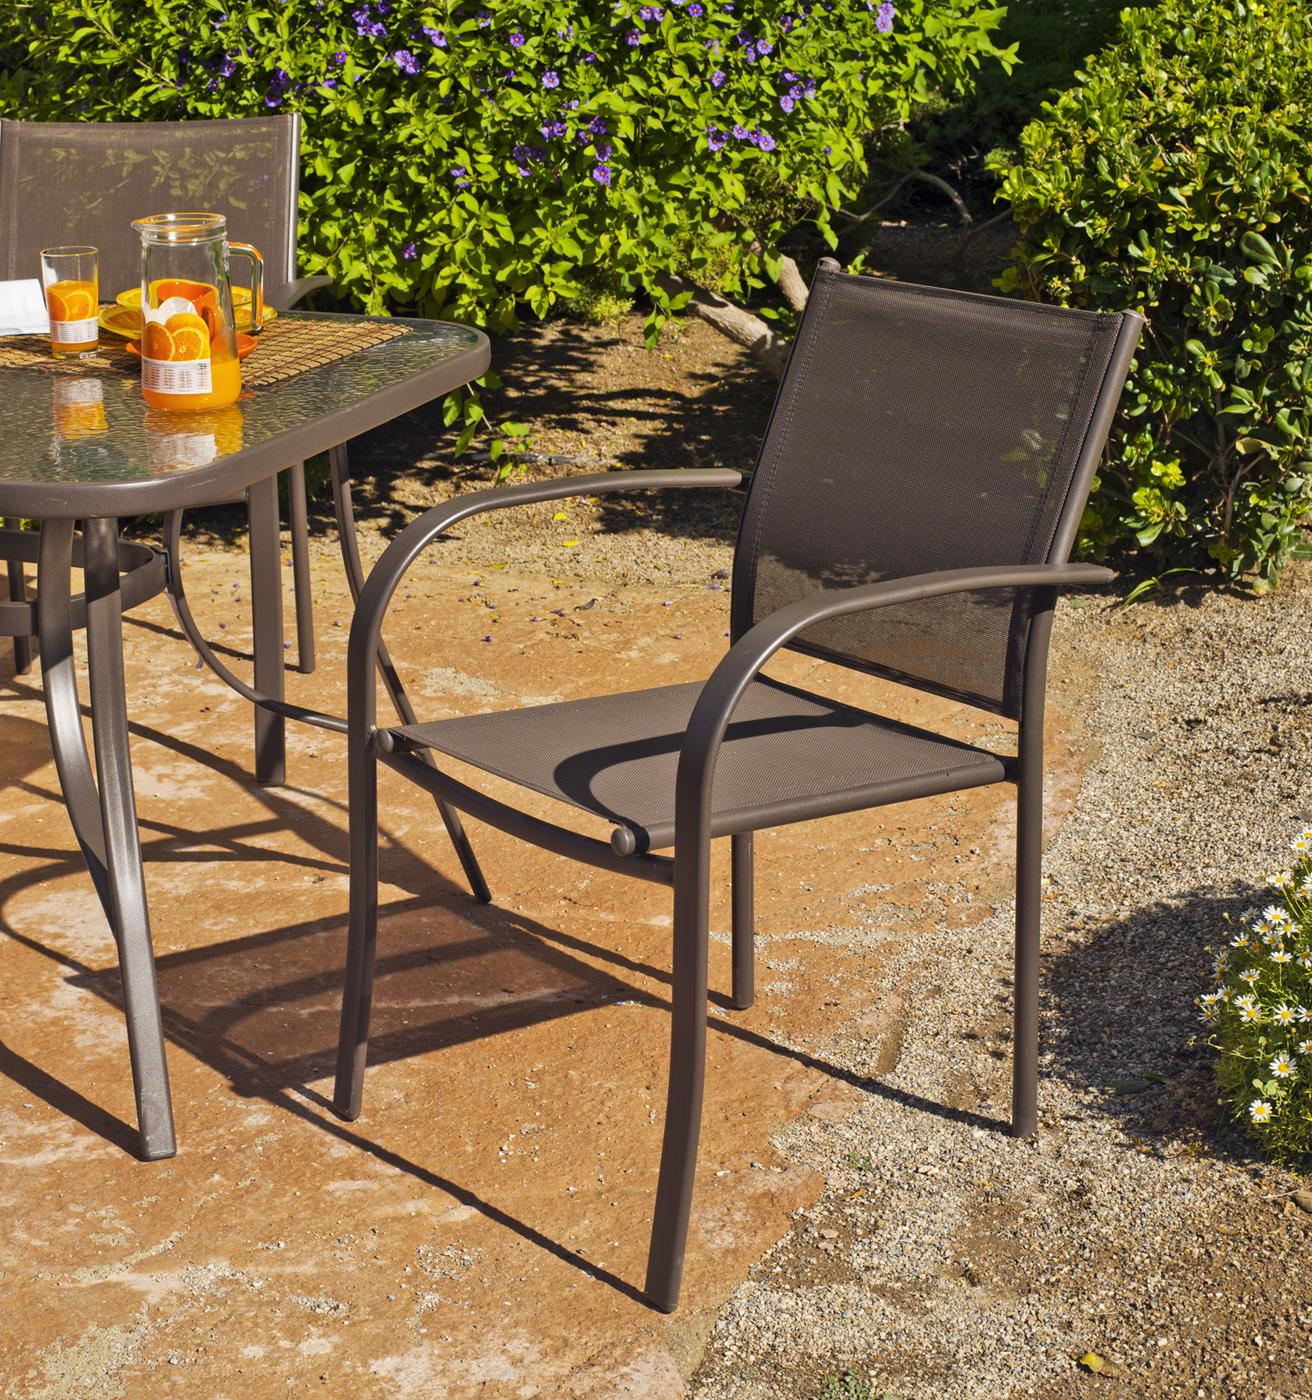 Conjunto Acero Macao-Barcelona 90-4 - Conjunto de acero color bronce: mesa redonda de 90 cm. Con tapa de cristal templado + 4 sillones de acero y textilen